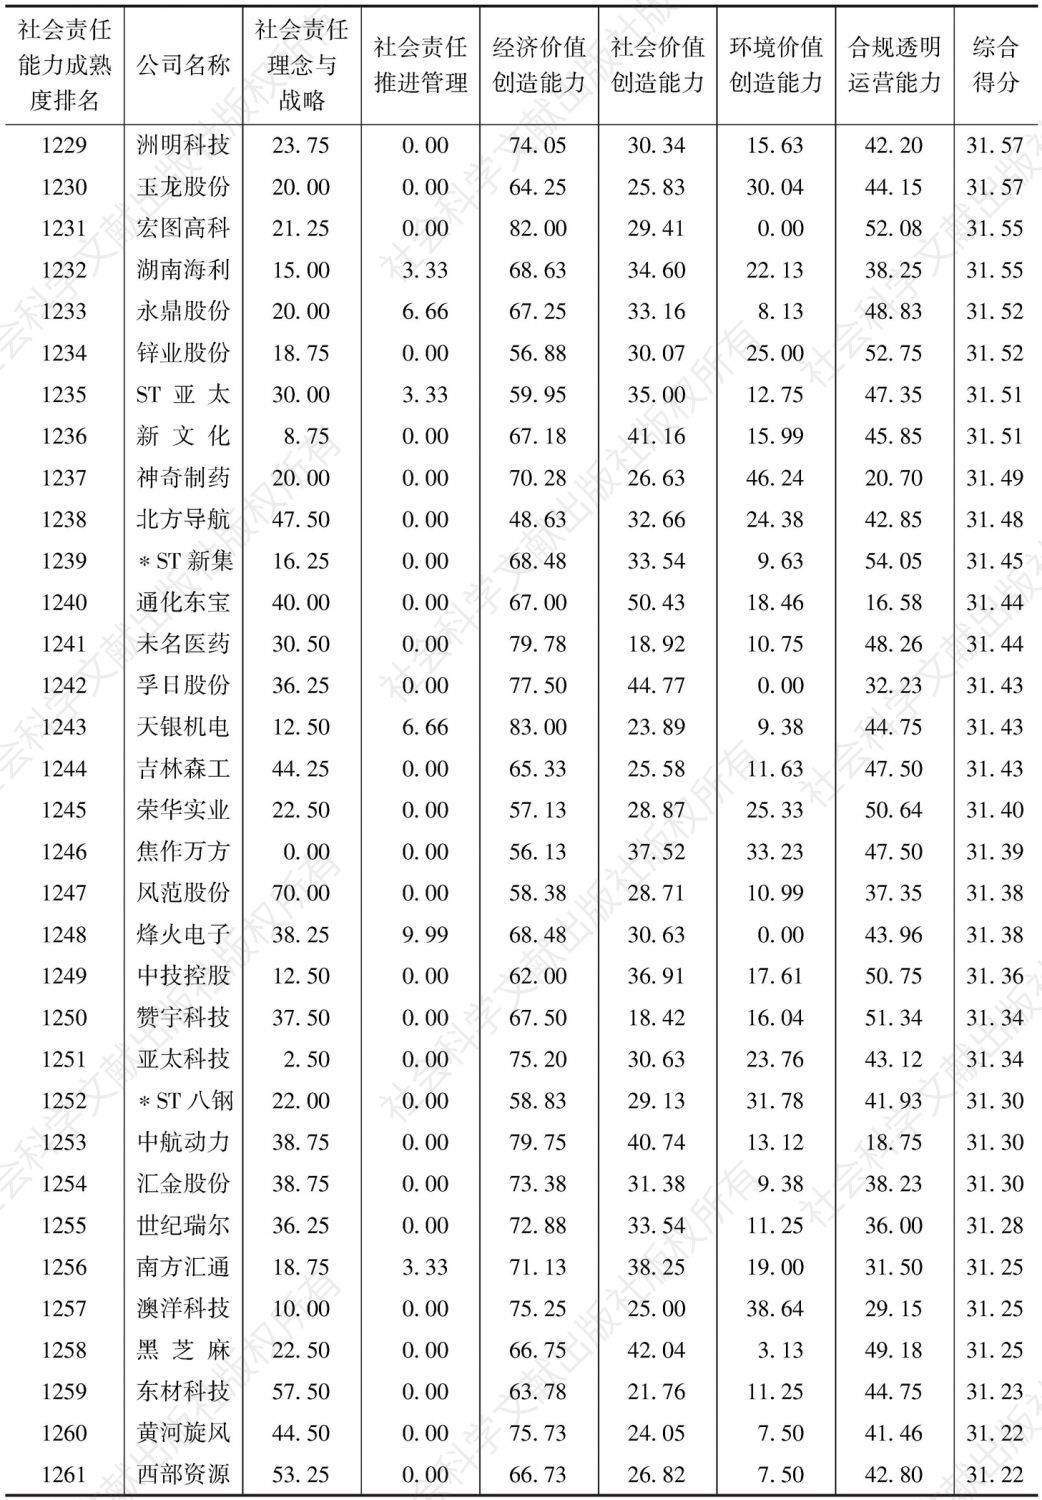 中国上市公司社会责任能力成熟度指数（2016）-续表38